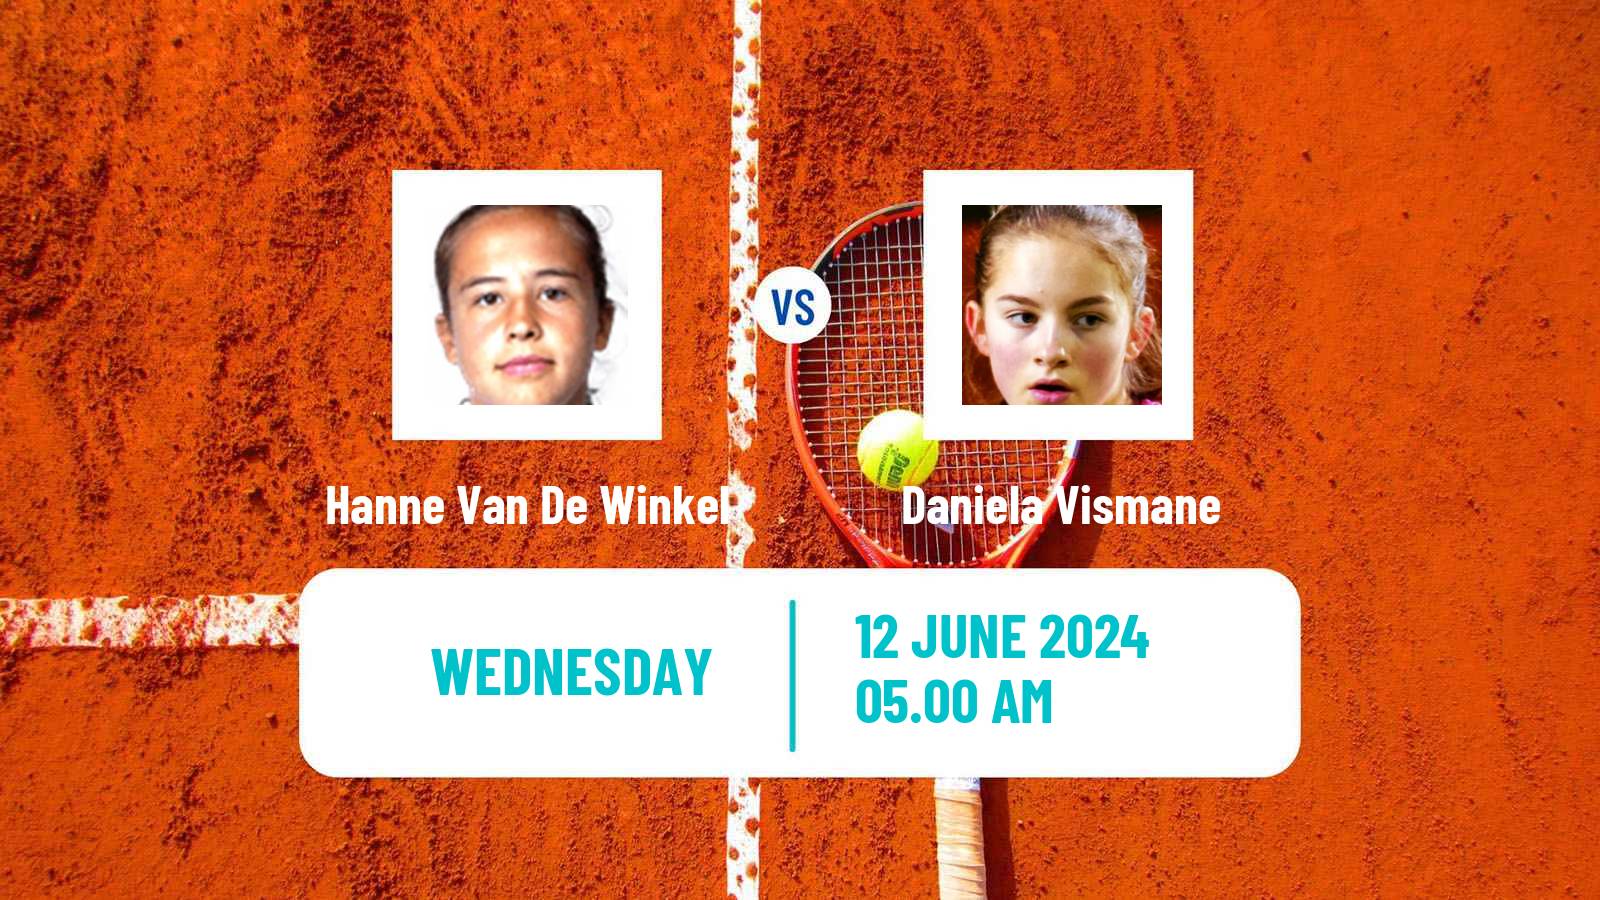 Tennis ITF W35 Gdansk Women Hanne Van De Winkel - Daniela Vismane